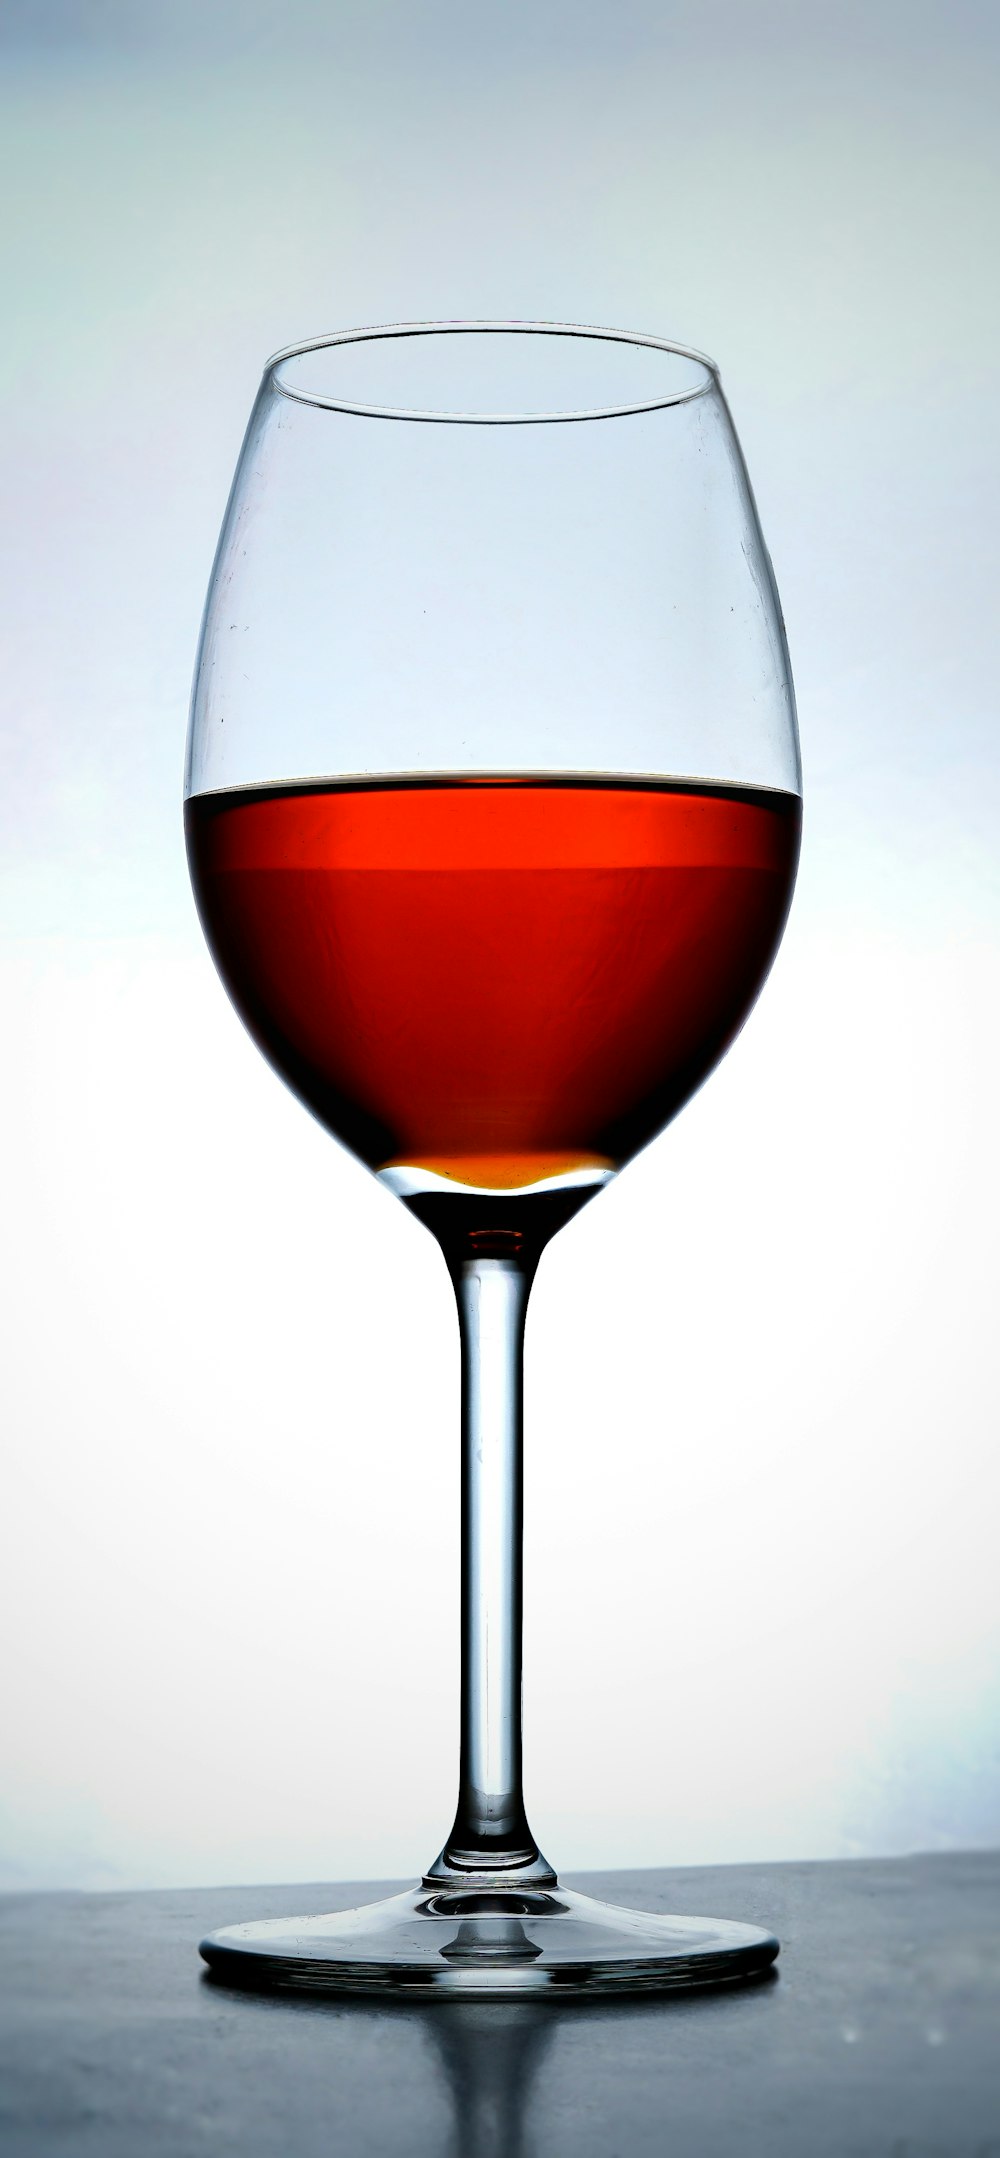 Fotos de copa de vino | Descargar imágenes gratis en Unsplash